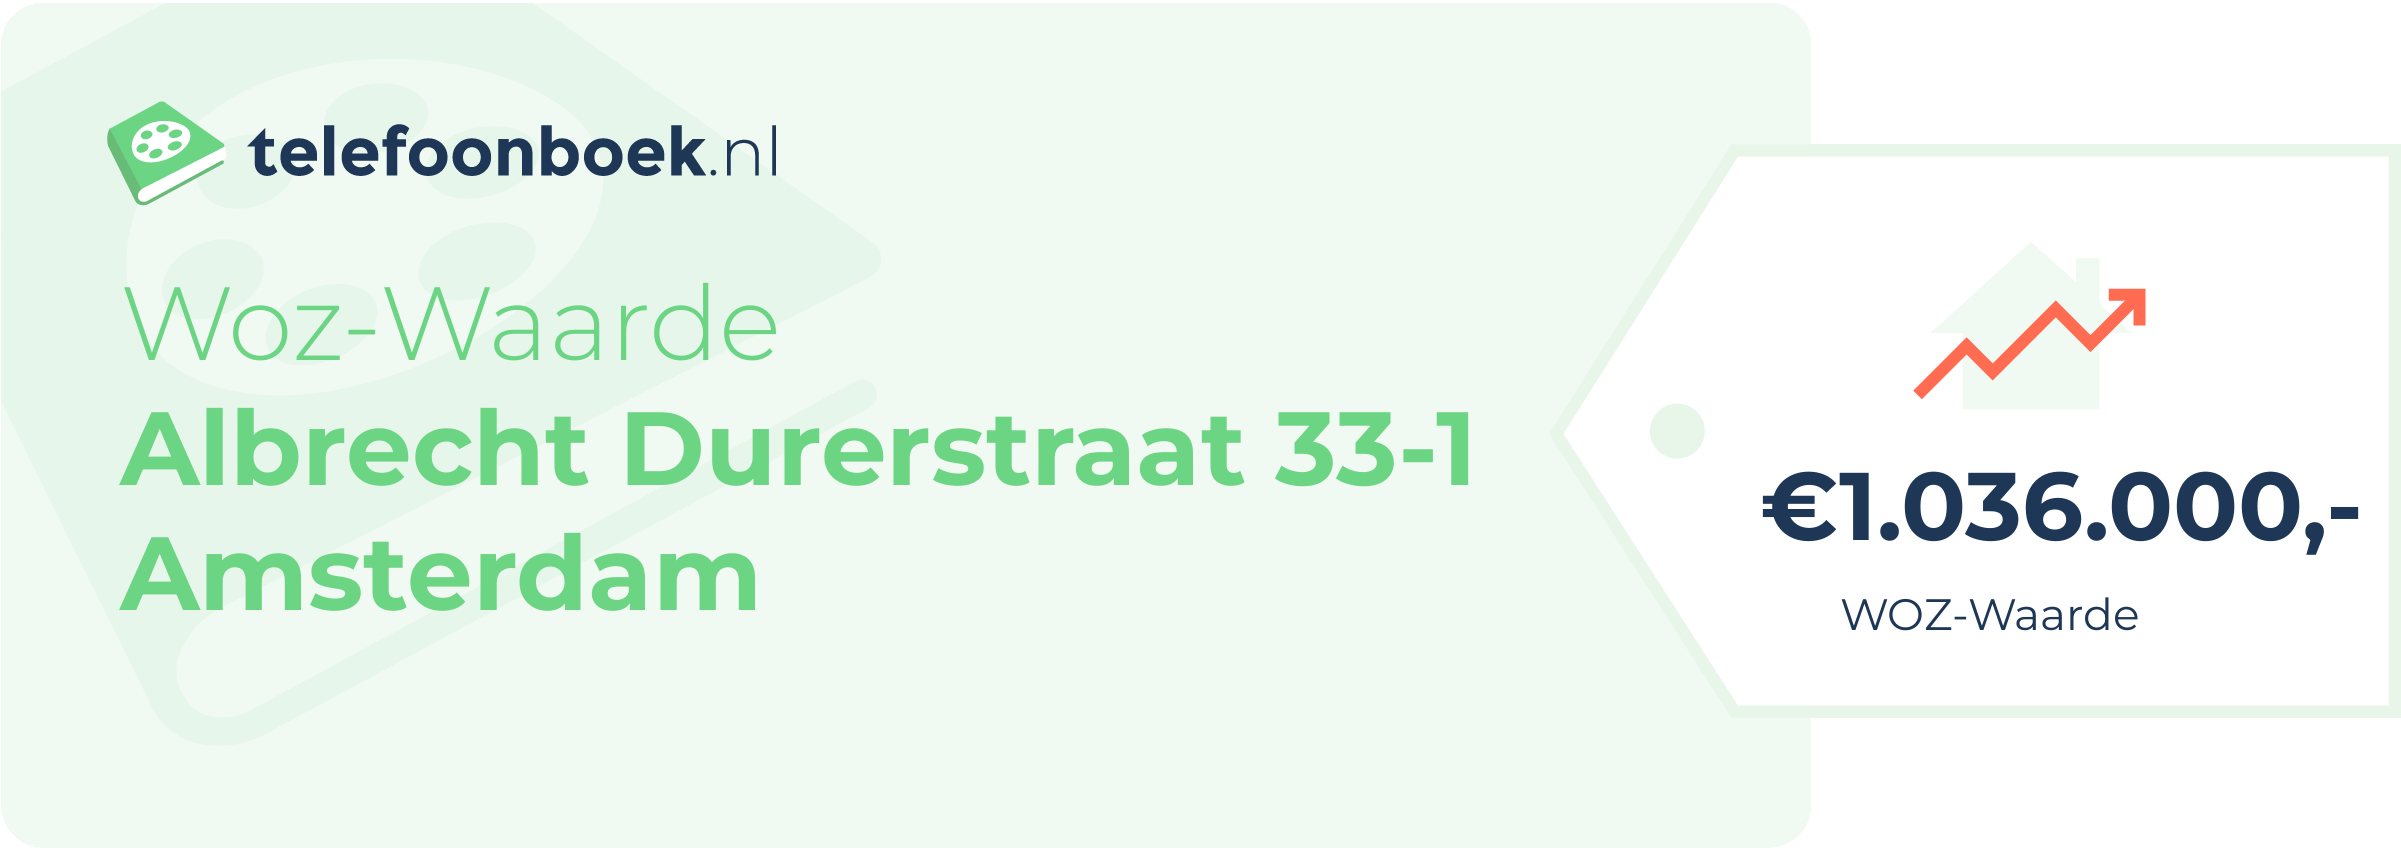 WOZ-waarde Albrecht Durerstraat 33-1 Amsterdam